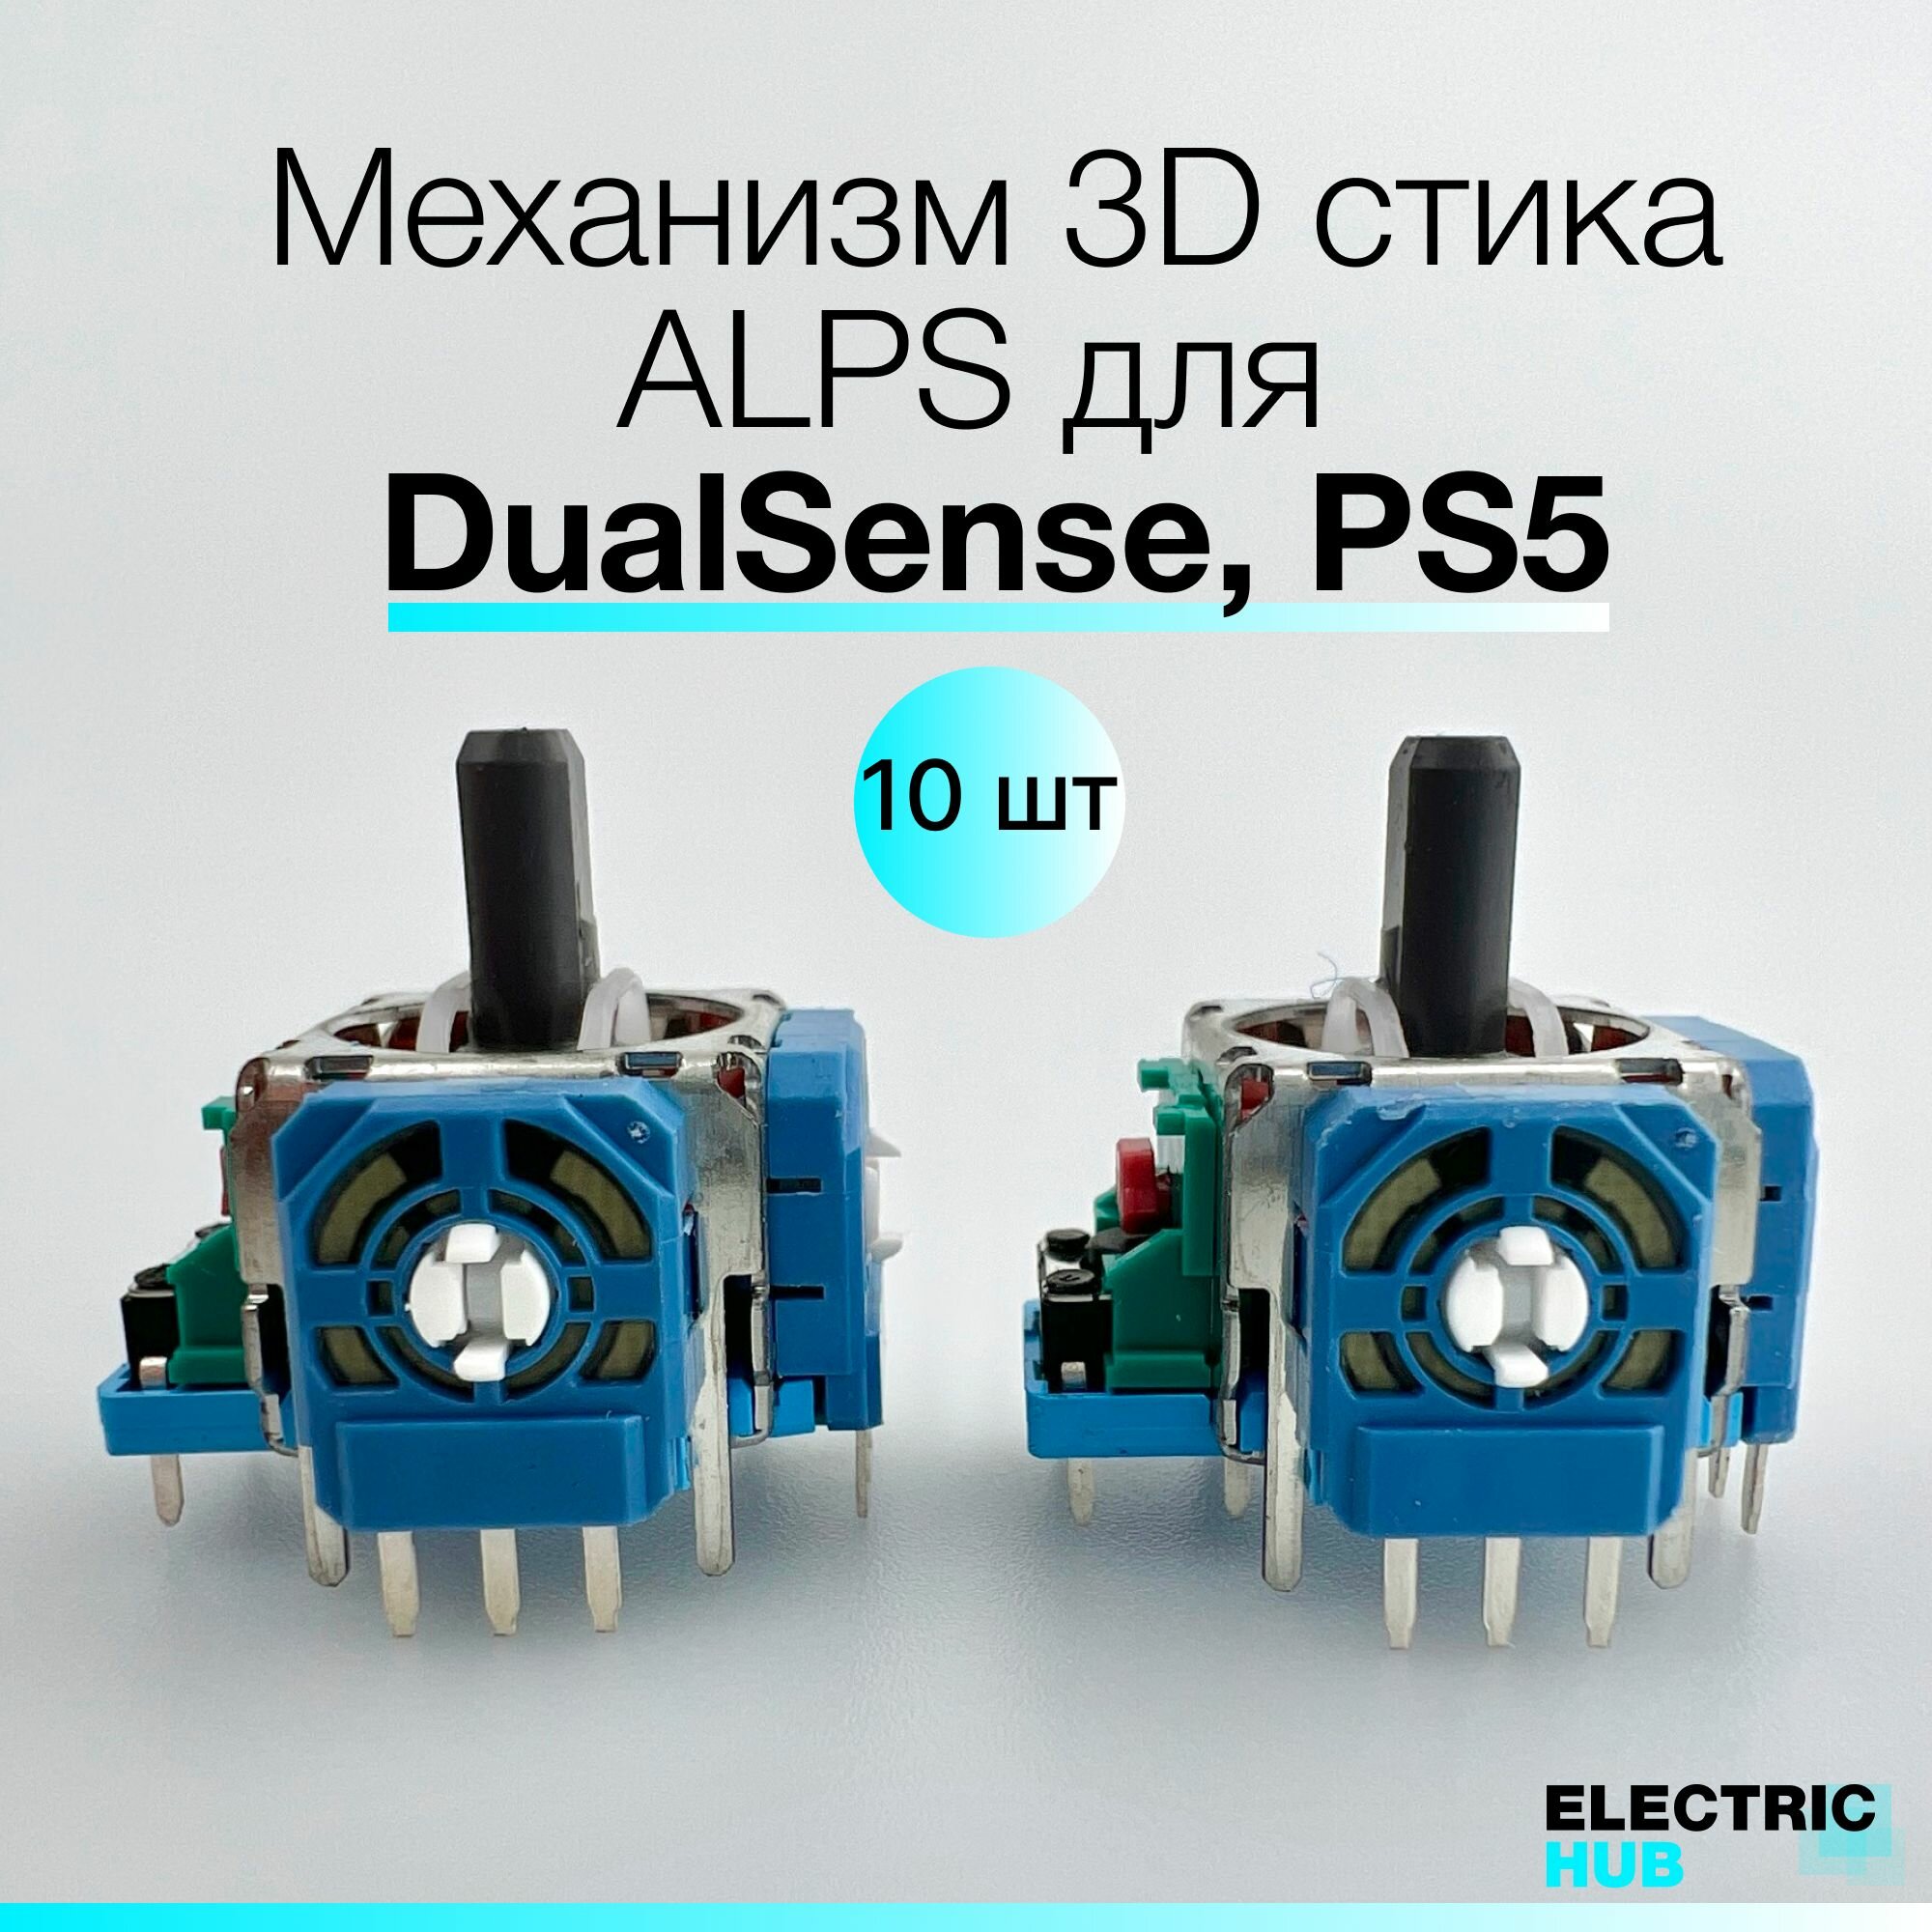 Оригинальный механизм 3D стика ALPS для DualSense, PS5, Синий, для ремонта джойстика/геймпада, 10 шт.